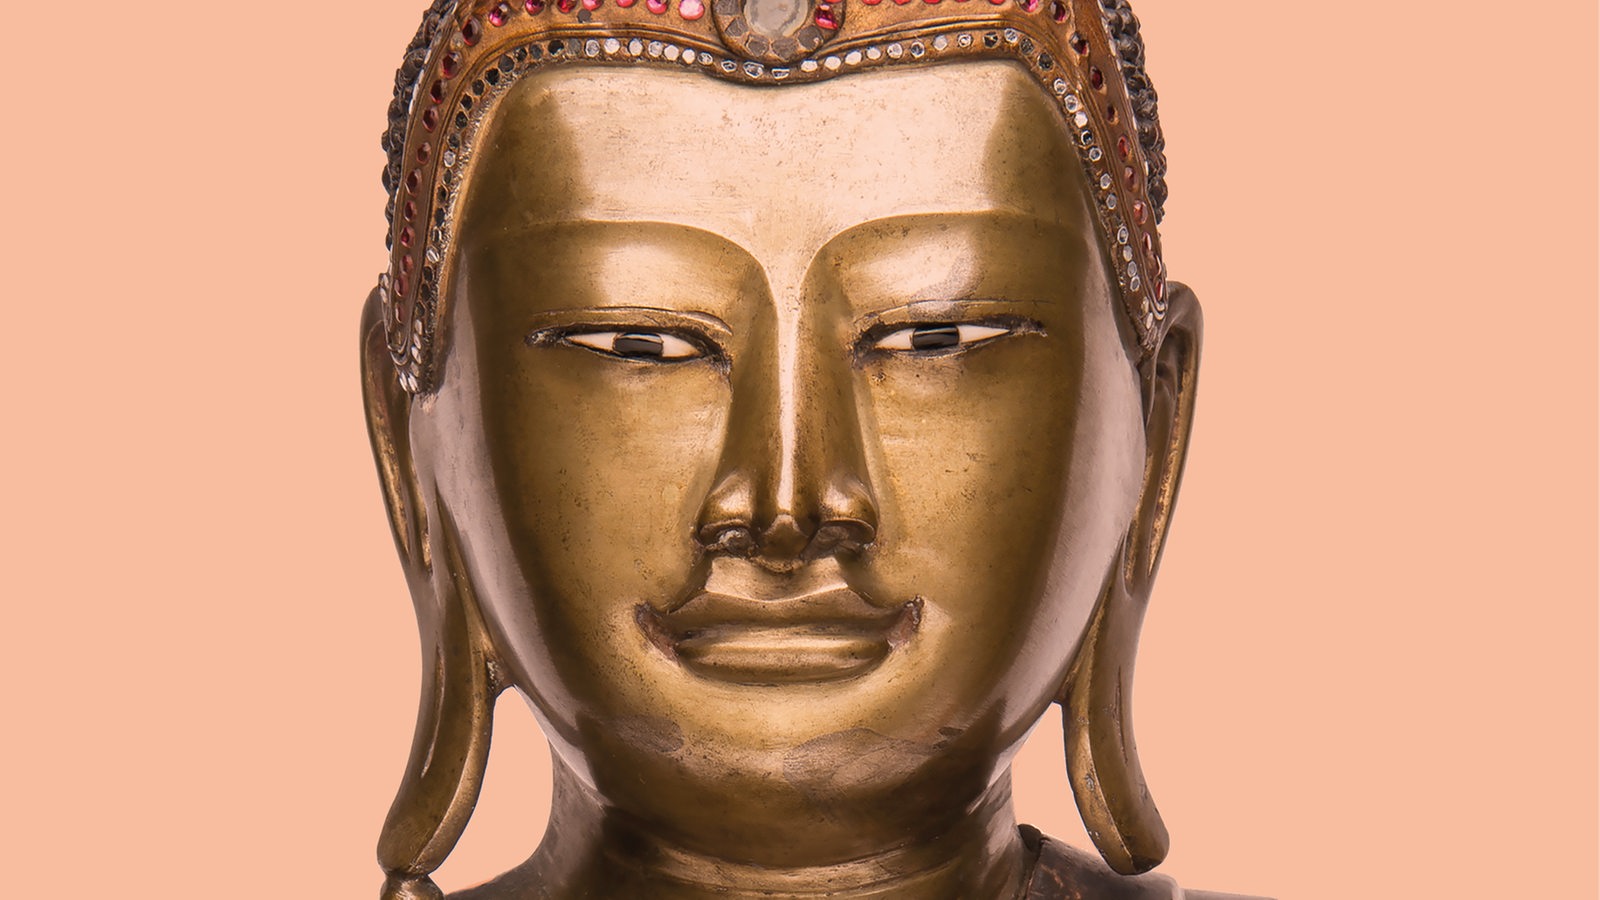 Figur des Buddha Sakyamuni aus der Buddhismus-Ausstellung im Übersee-Museum